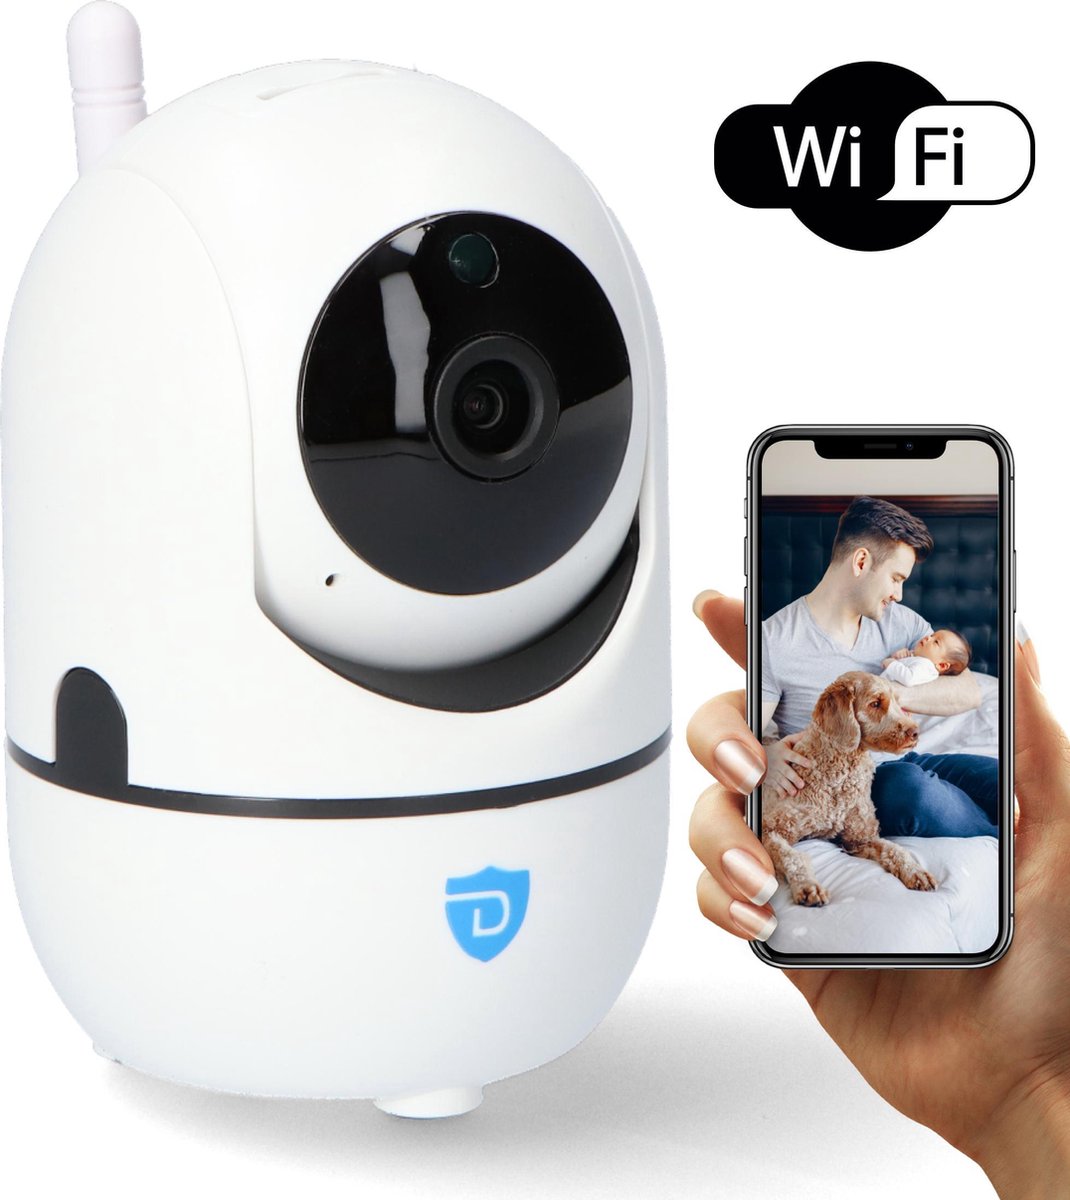 Hondencamera - Huisdiercamera met app - Bestuurbaar via Telefoon - Beveiligingscamera - Automatisch Volgen - Draadloos via Wifi - Spreken en Luister Functie - Petcam - Wit